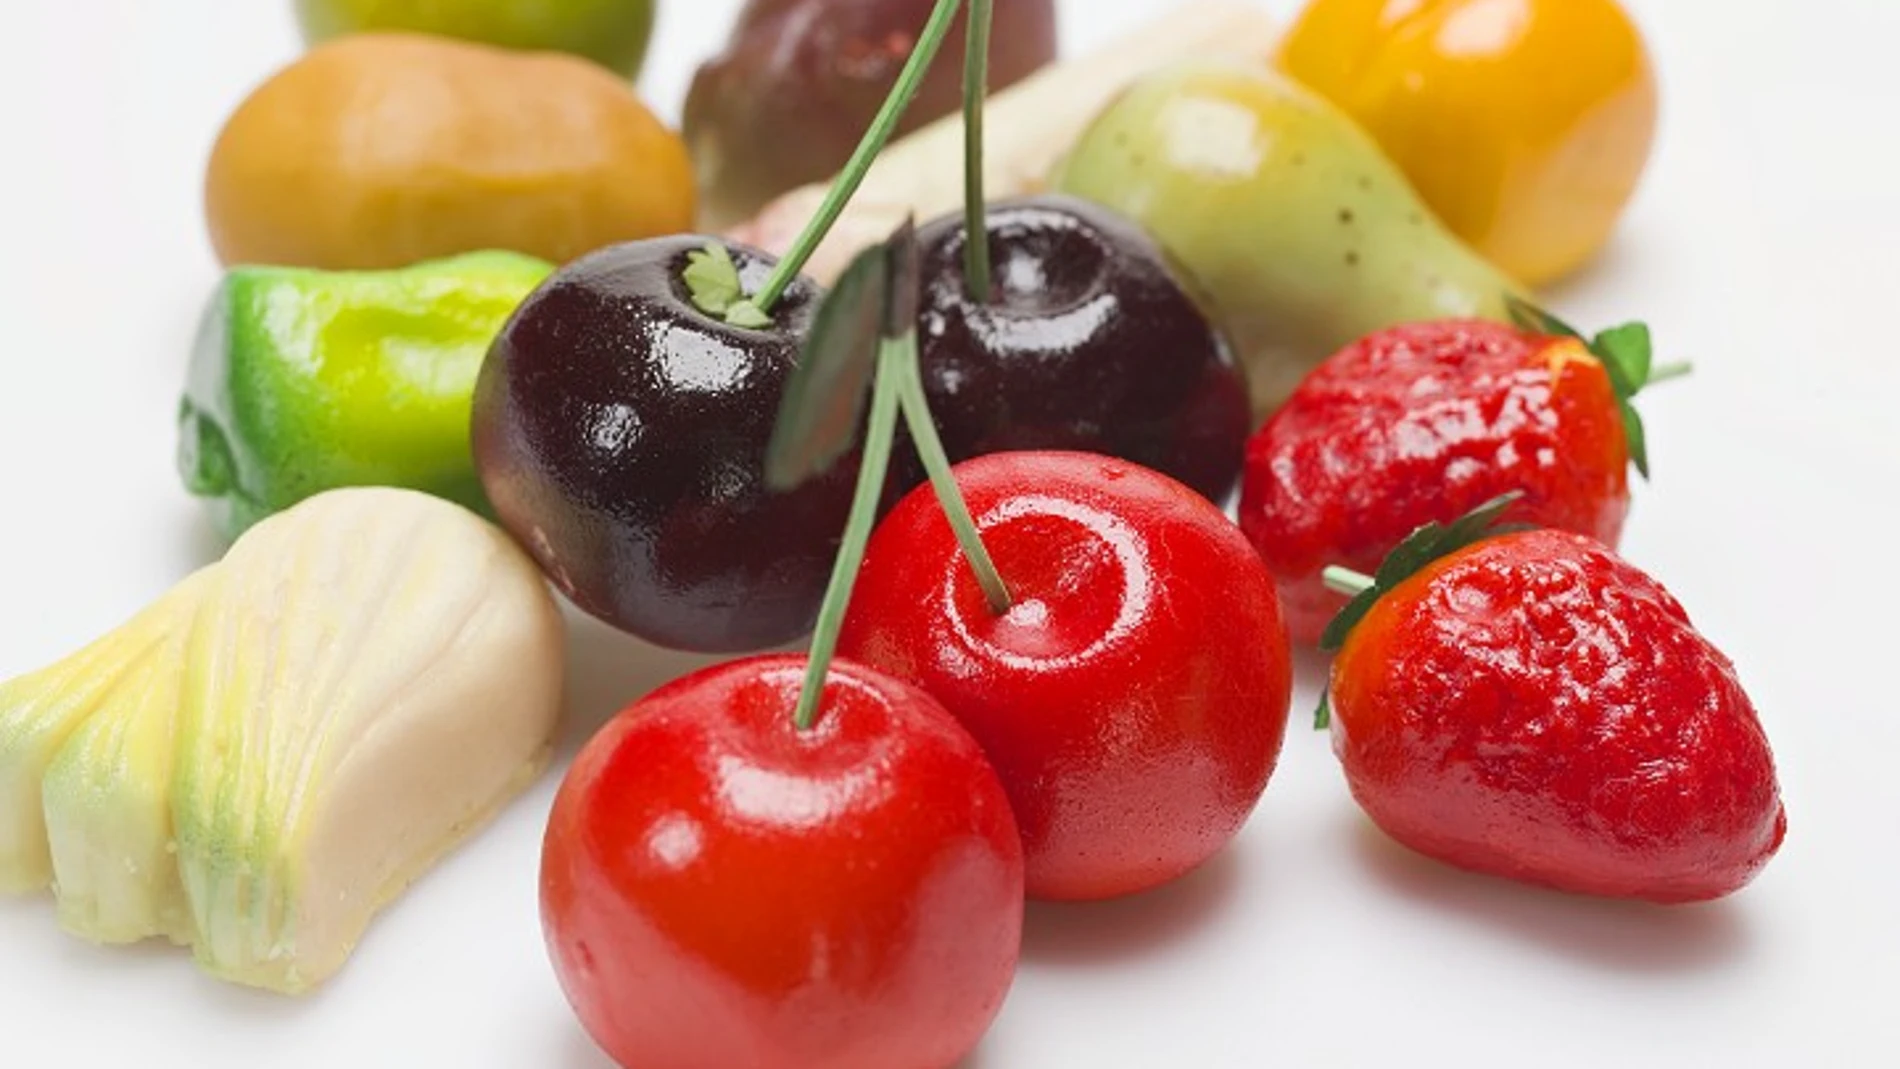 Frutas y verduras frente a la depresión